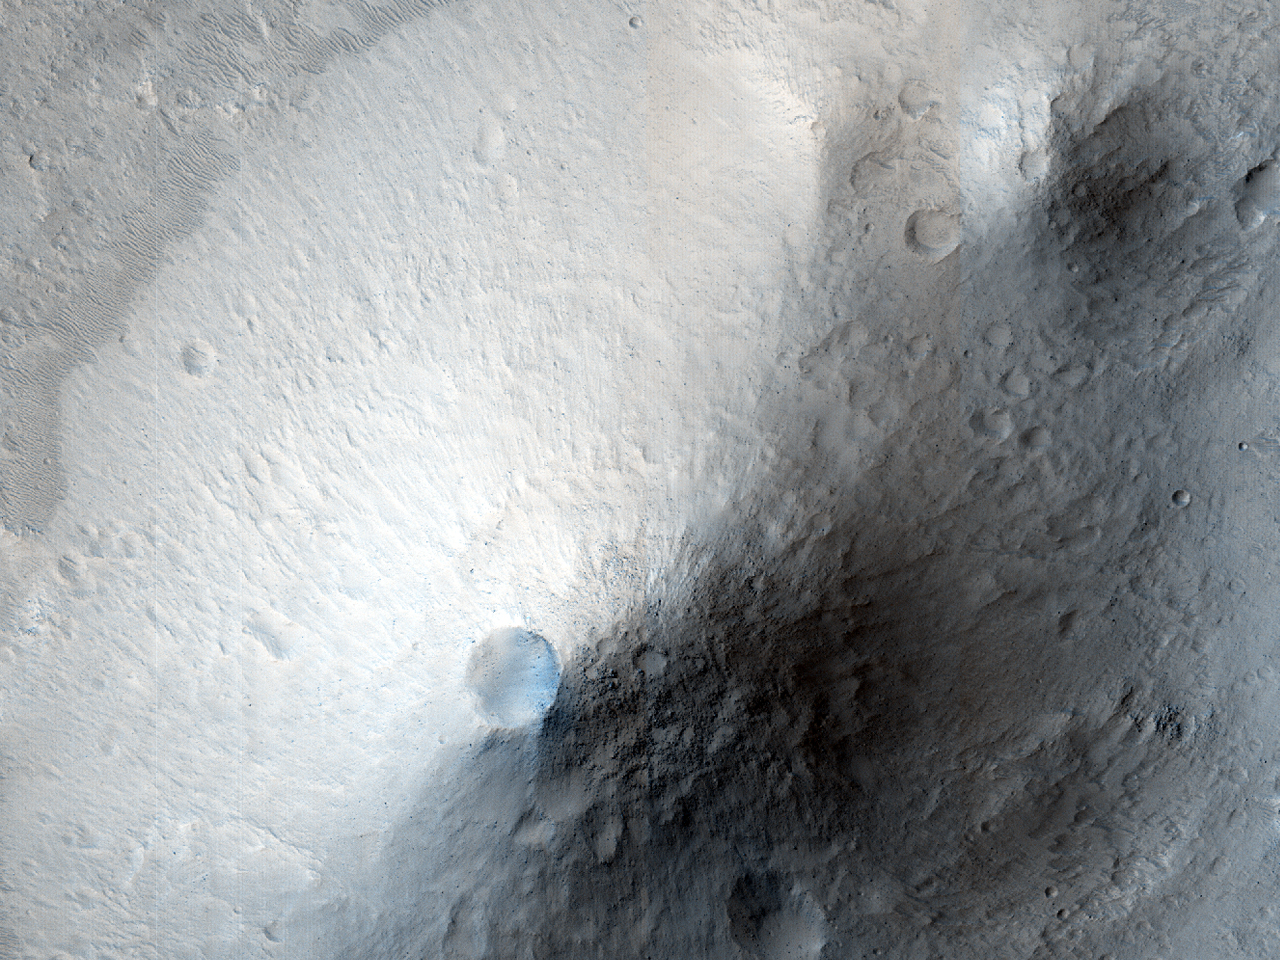 Durrokaj montoj formitaj per erodata kratera sedimento en Galilaei kratero